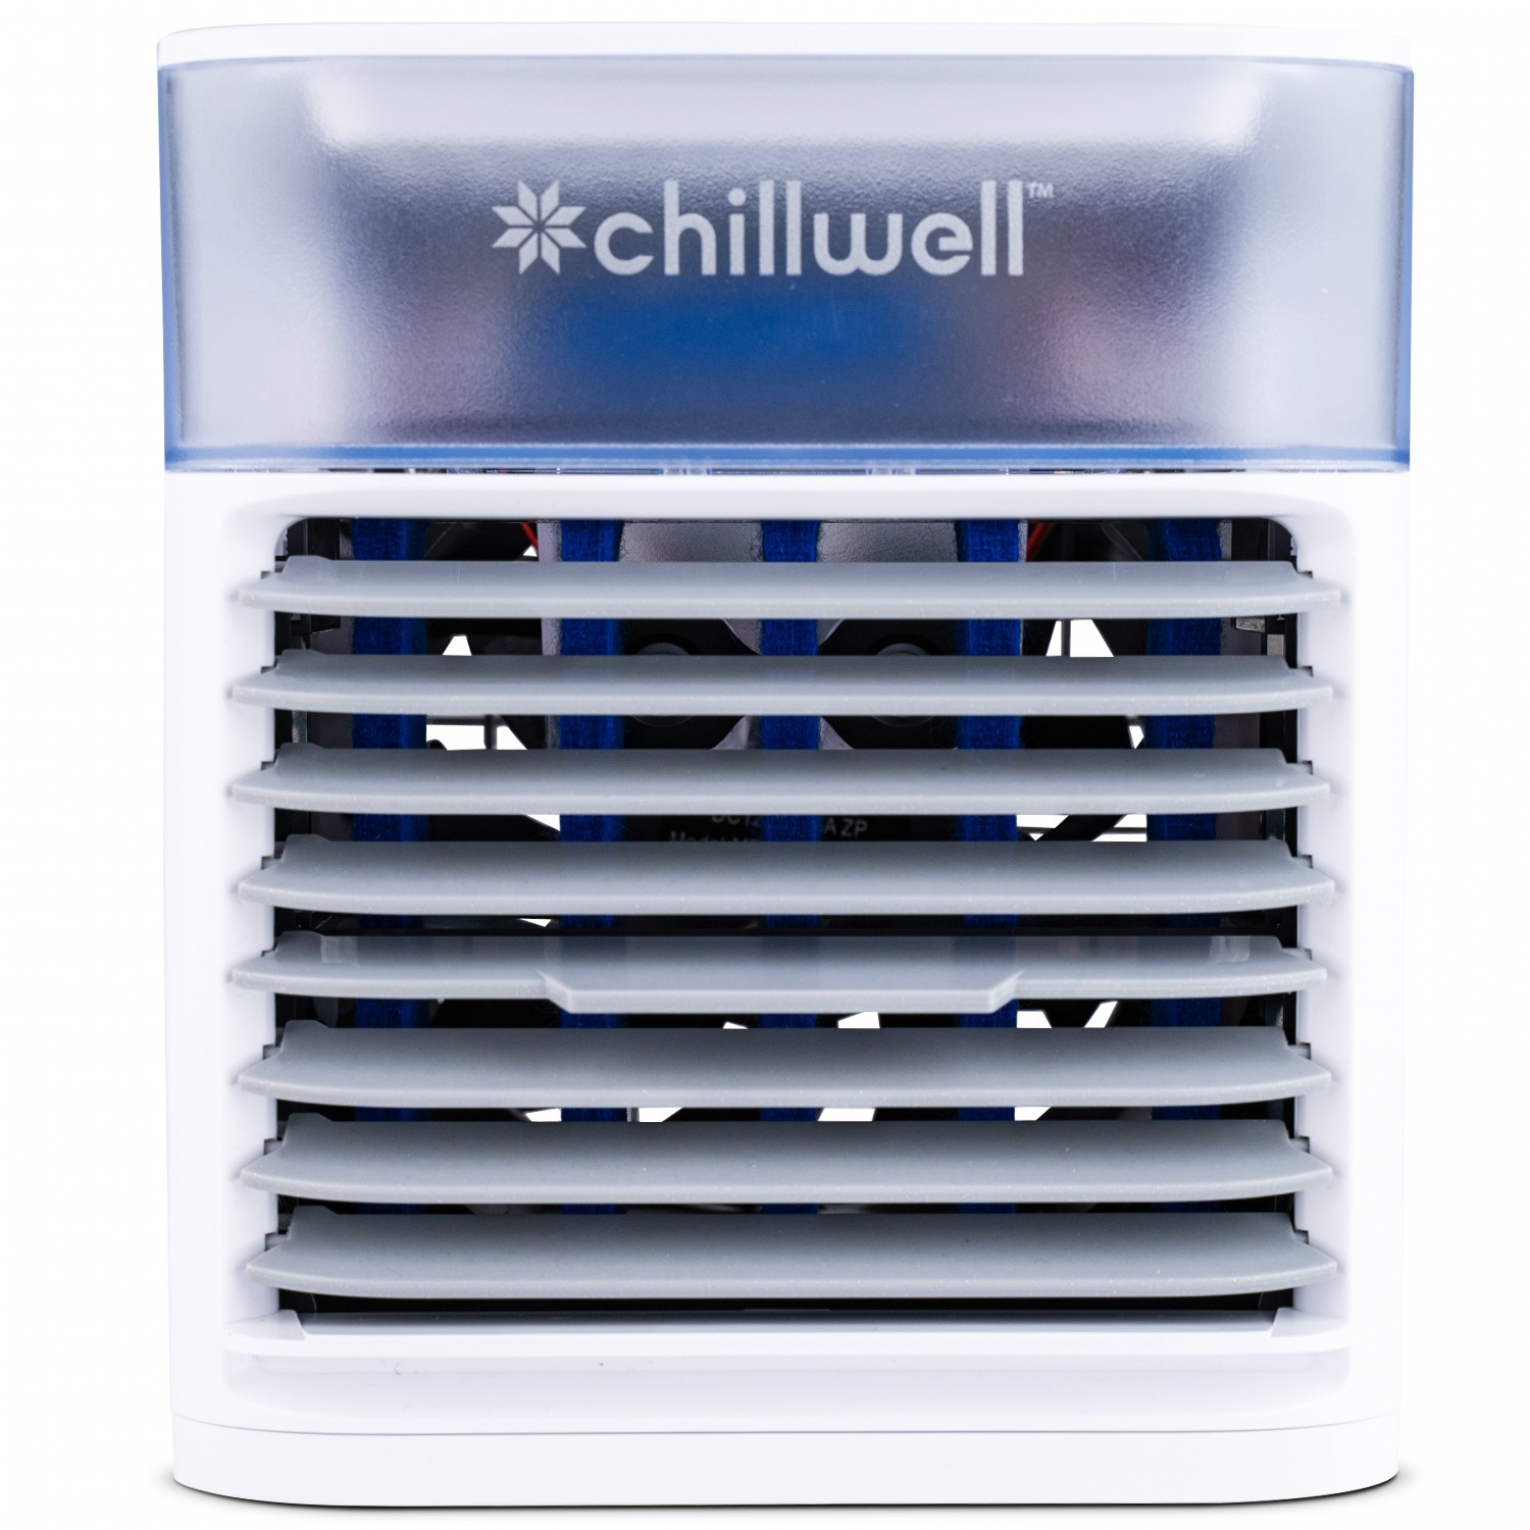 Chillwell AC Purifier